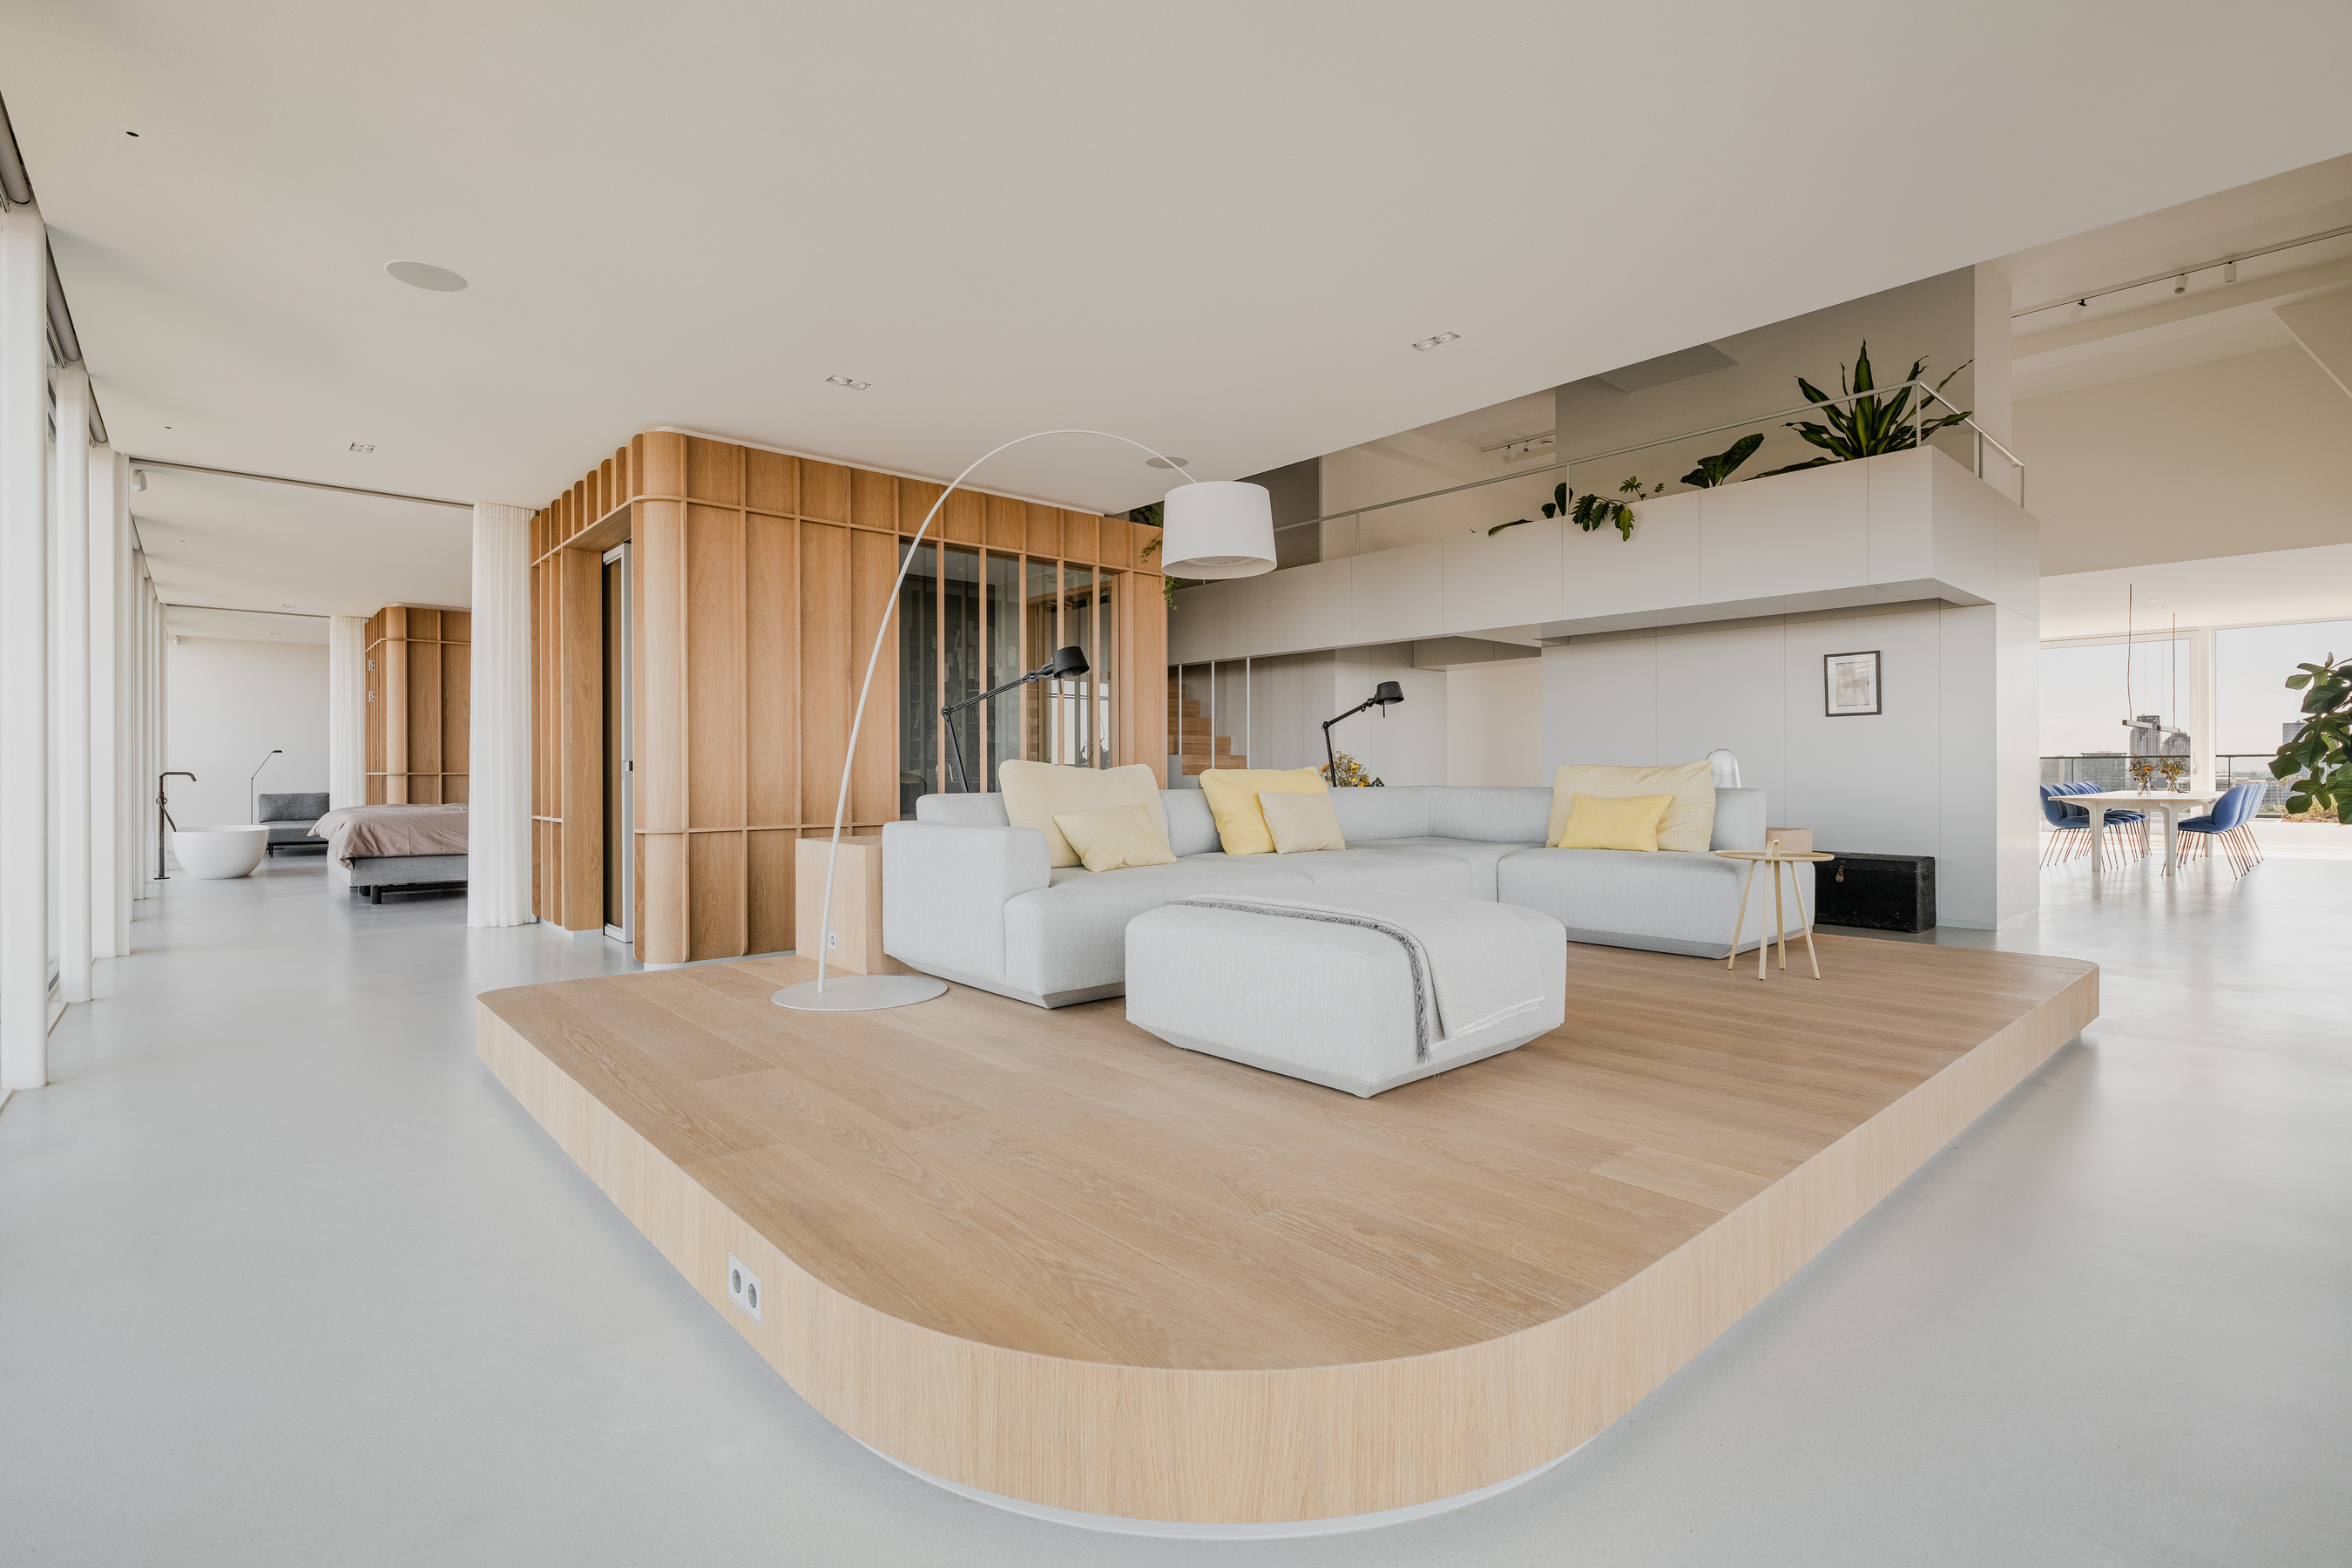 以木地板架高方式定義出起居空間，同時保有開闊視感，簡單俐落的L 型沙發造就無與倫比的首席視野座位區。